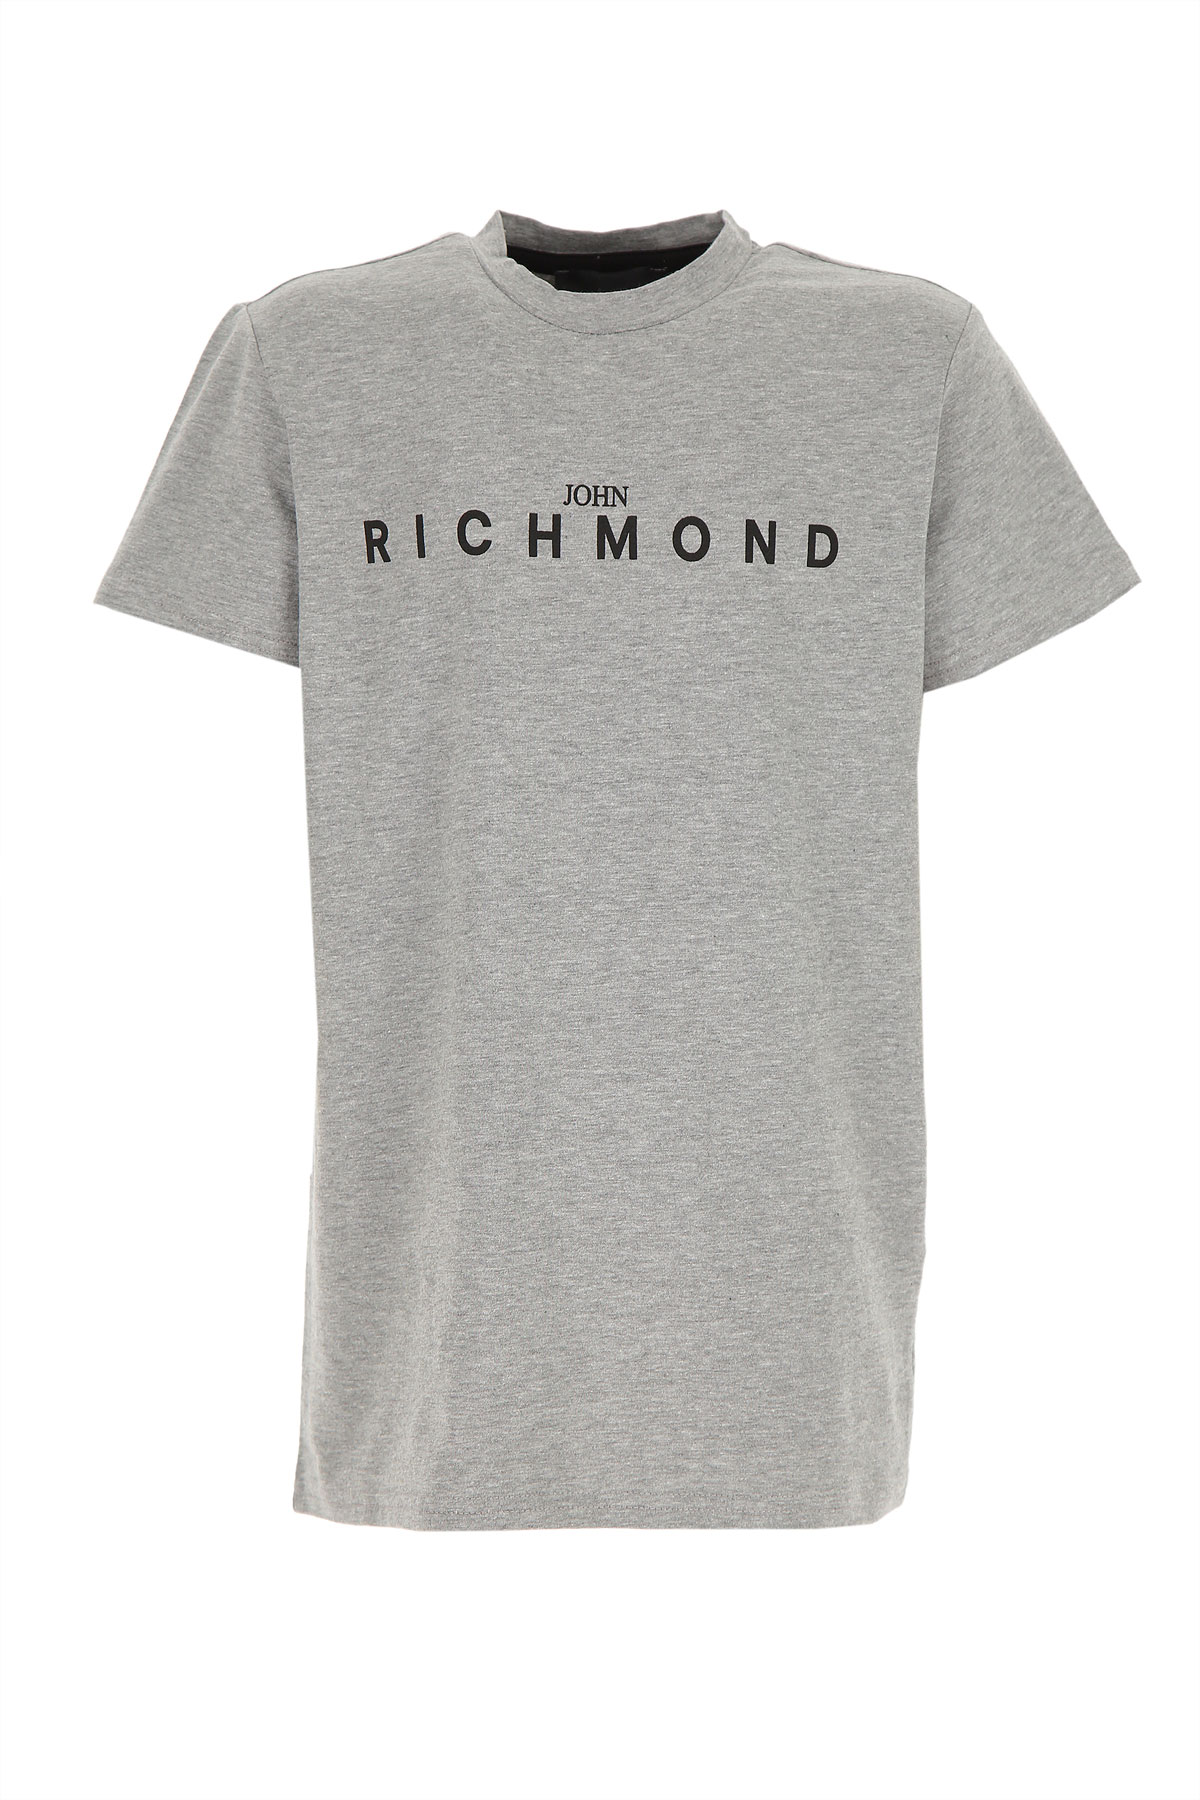 Richmond Kinder T-Shirt für Jungen Günstig im Sale, Grau, Baumwolle, 2017, 10Y 12Y 16Y 4Y 6Y 8Y